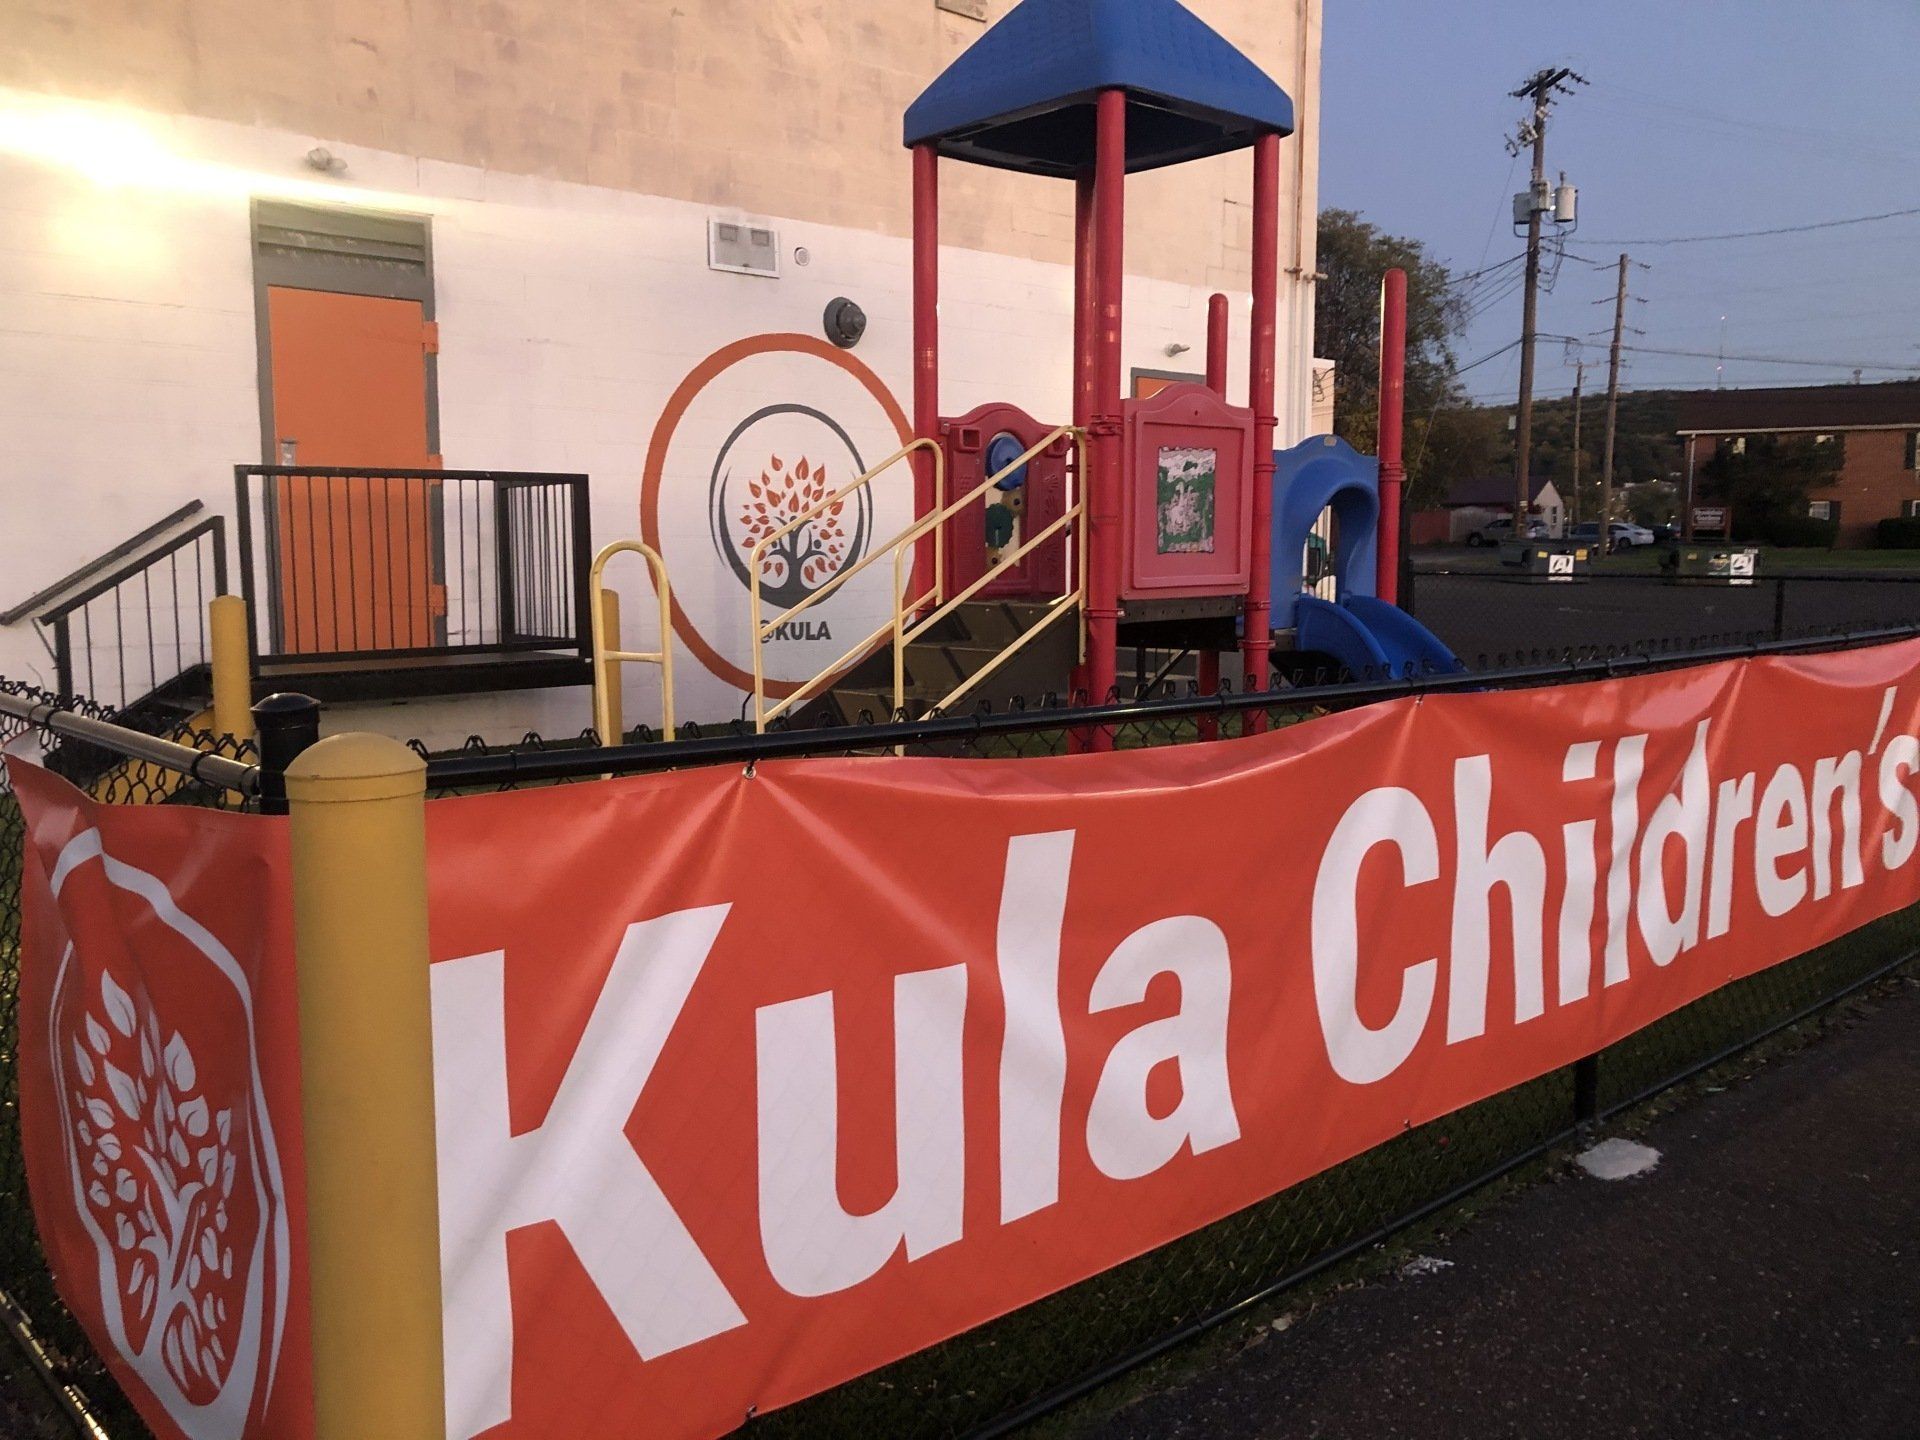 Kula Children's Center playground